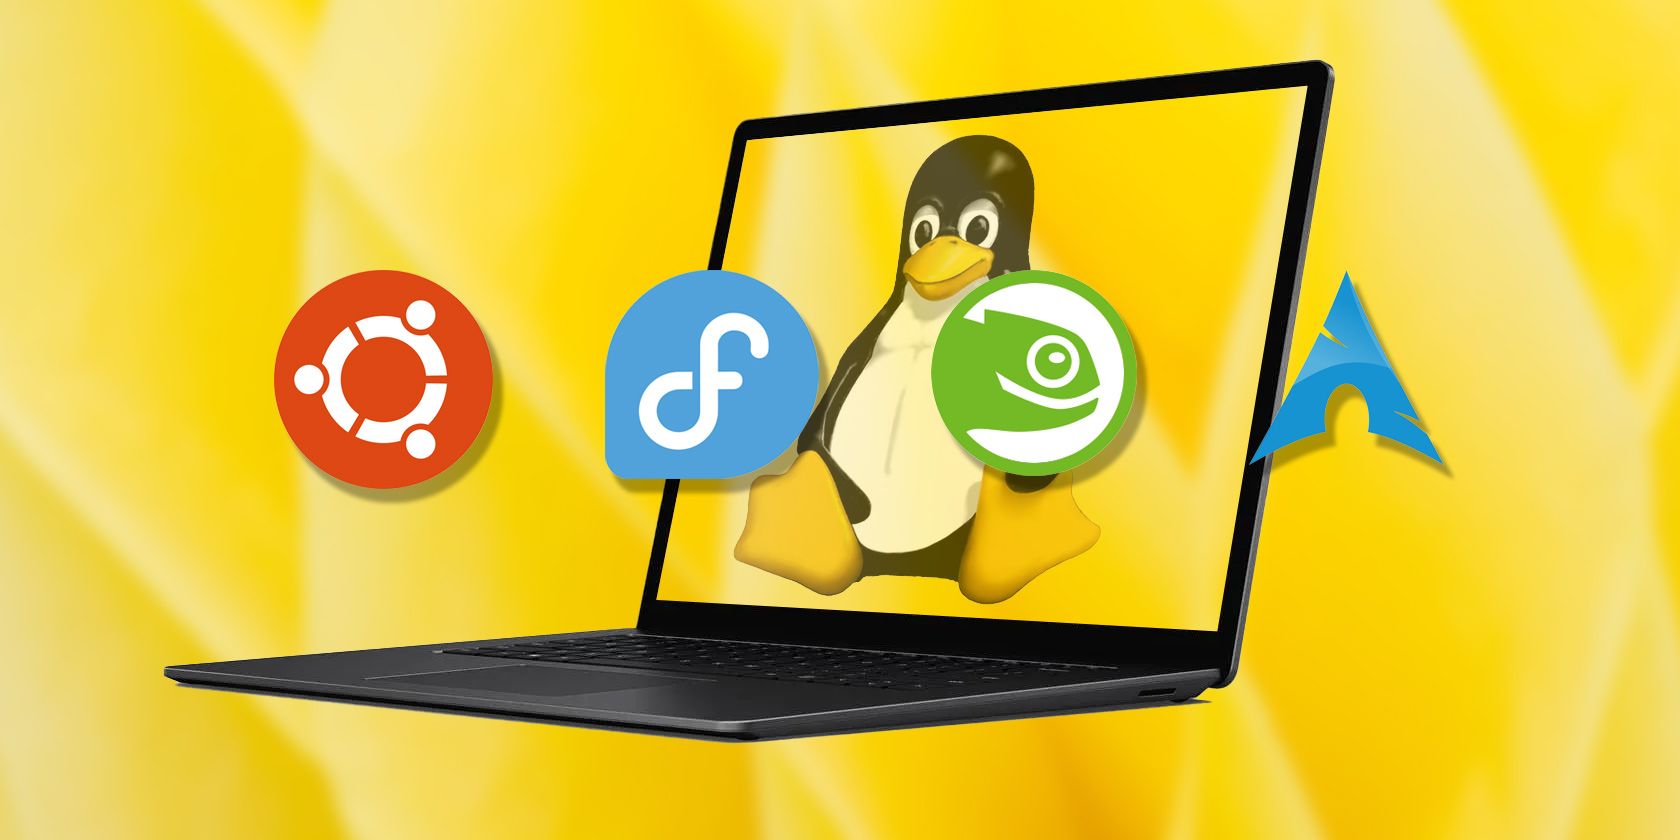 Linux distros logos